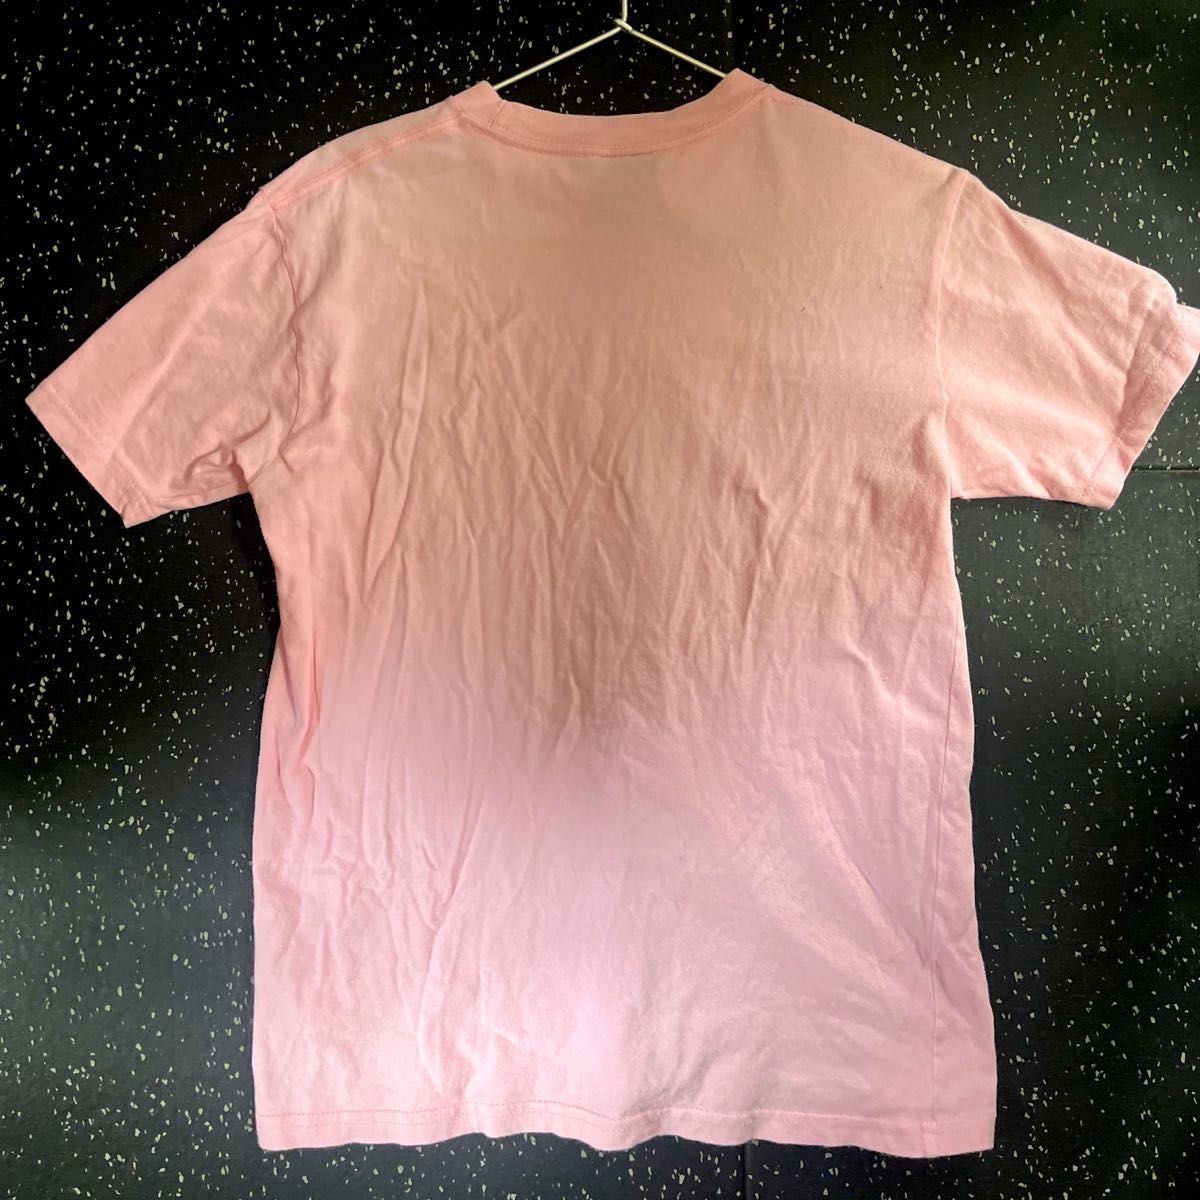 【正規品】映画サマーウォーズ 半袖Tシャツ Sサイズ pinkピンク